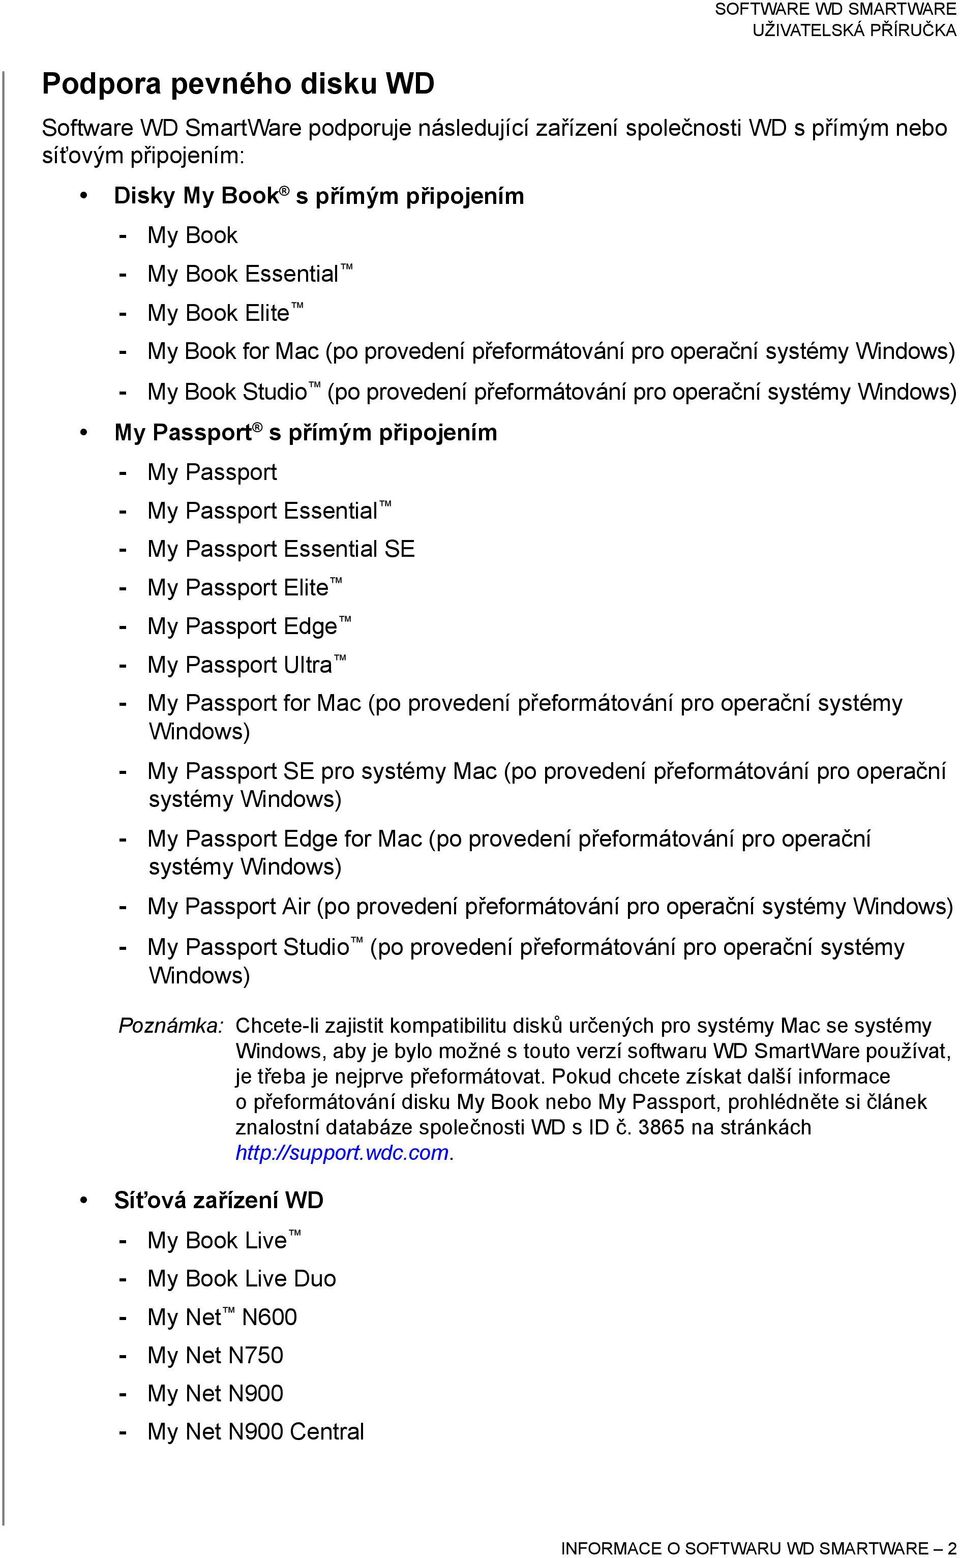 My Passport - My Passport Essential - My Passport Essential SE - My Passport Elite - My Passport Edge - My Passport Ultra - My Passport for Mac (po provedení přeformátování pro operační systémy